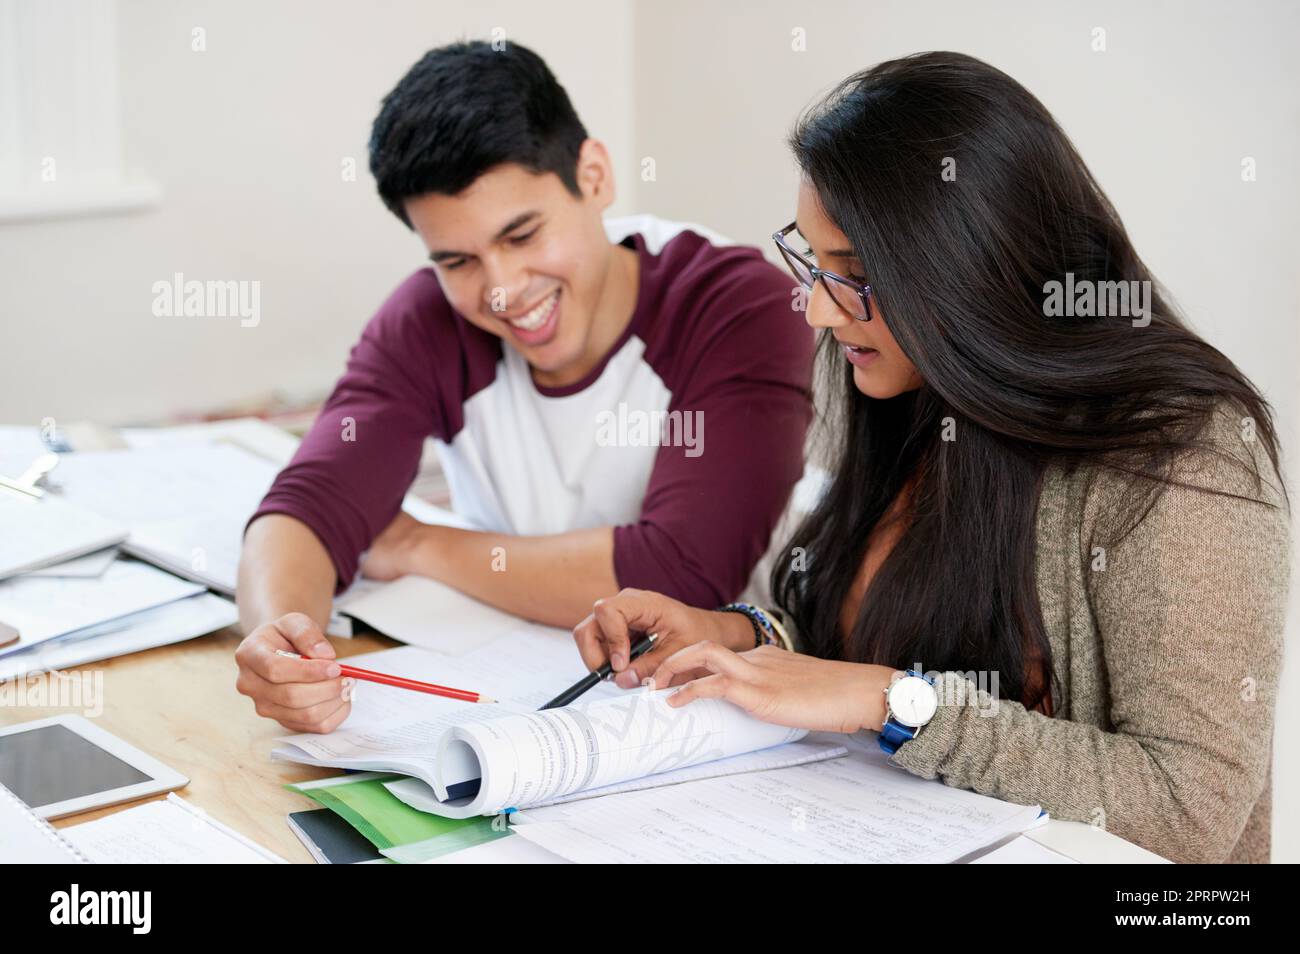 Dandole una mano d'aiuto, due studenti universitari che studiano. Foto Stock